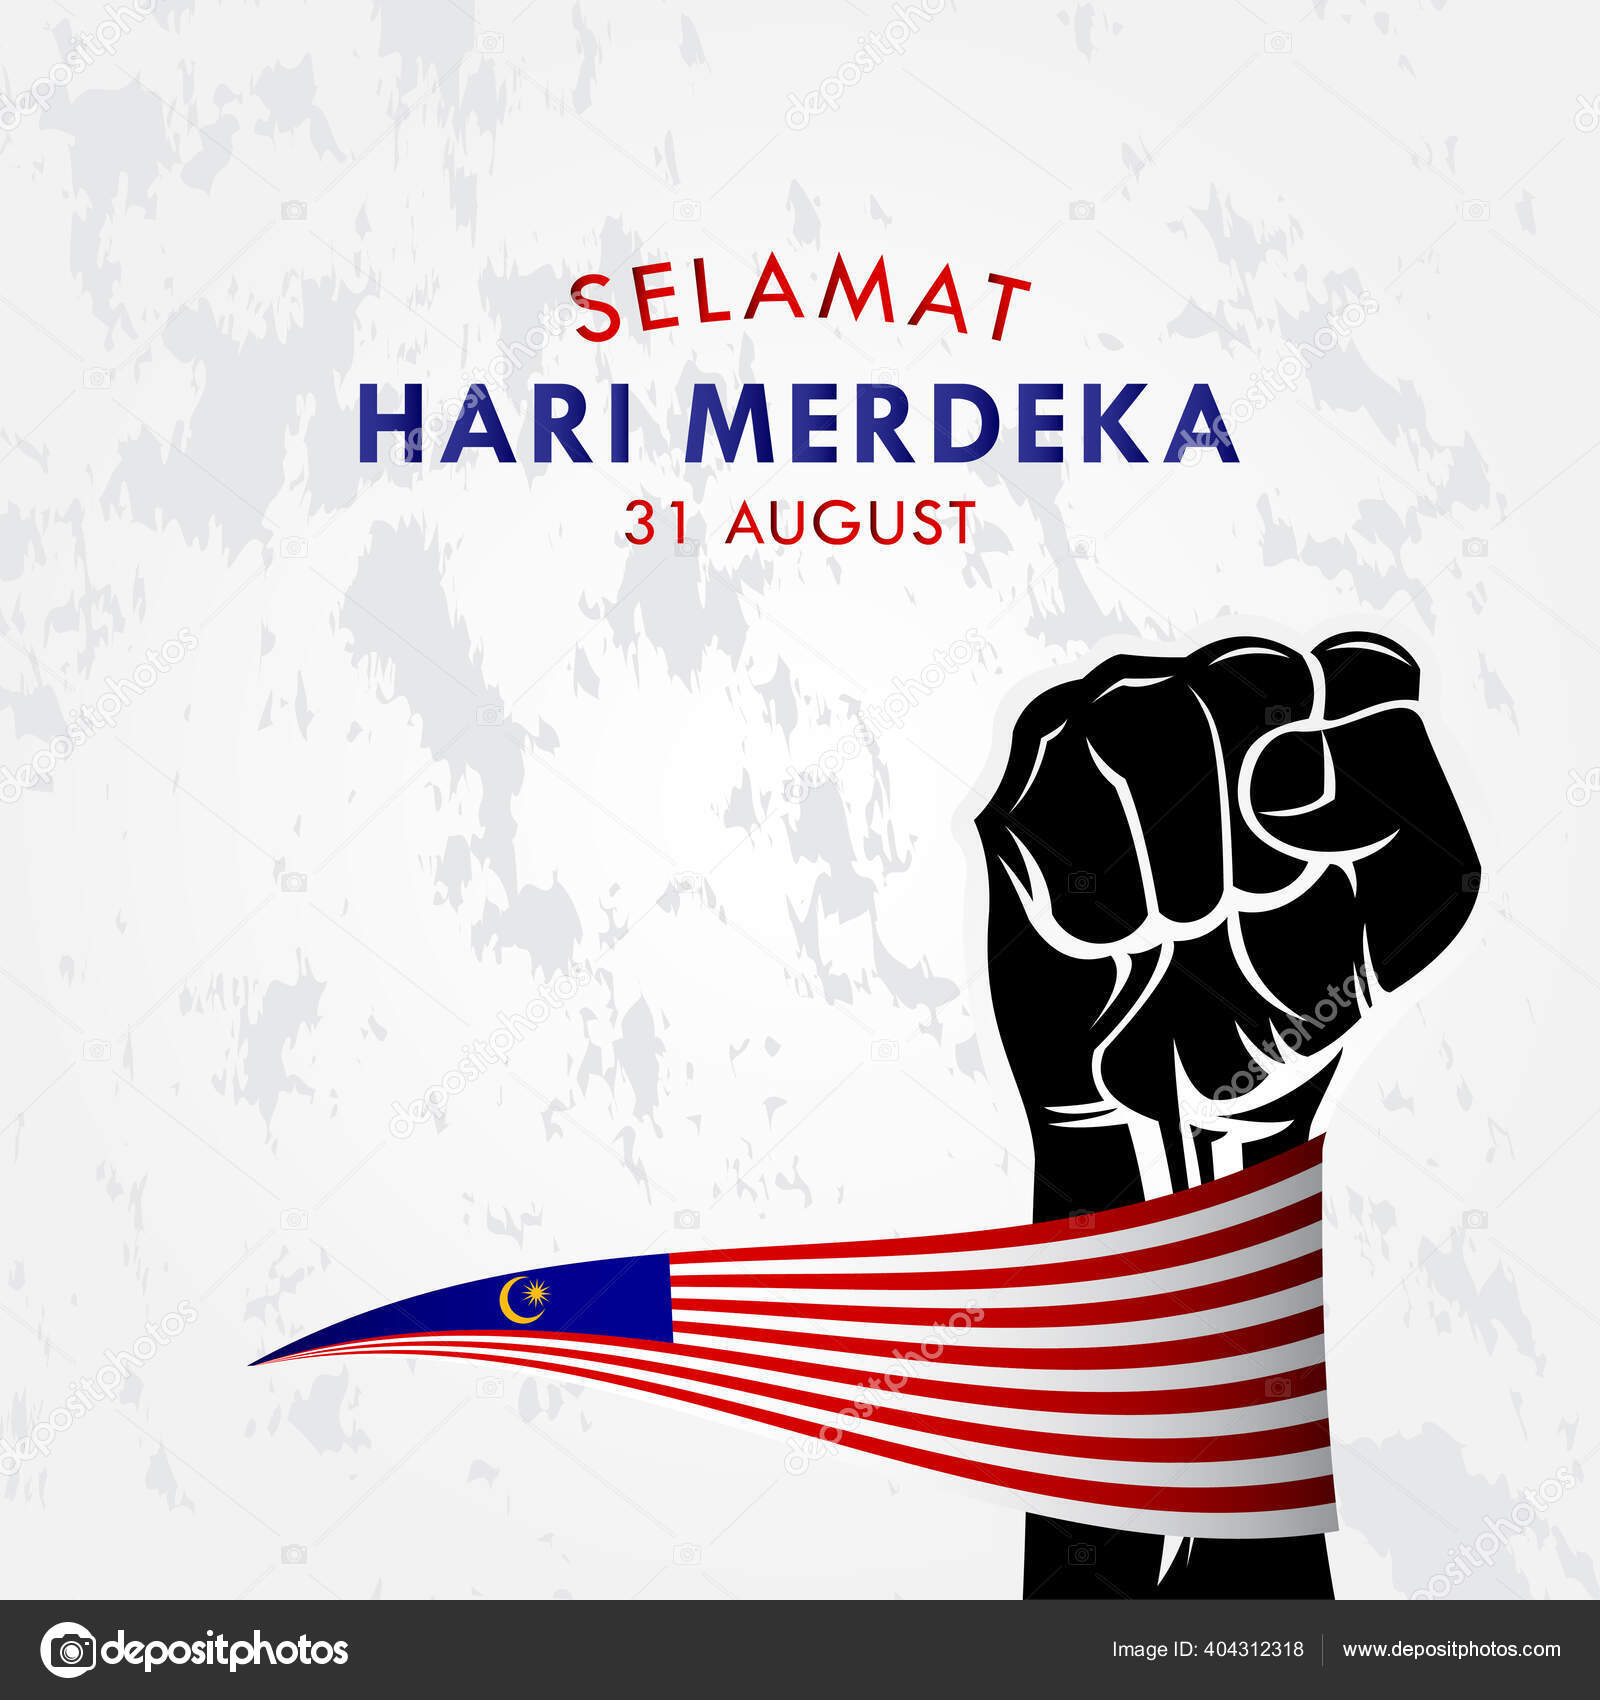 Selamat hari merdeka malaysia